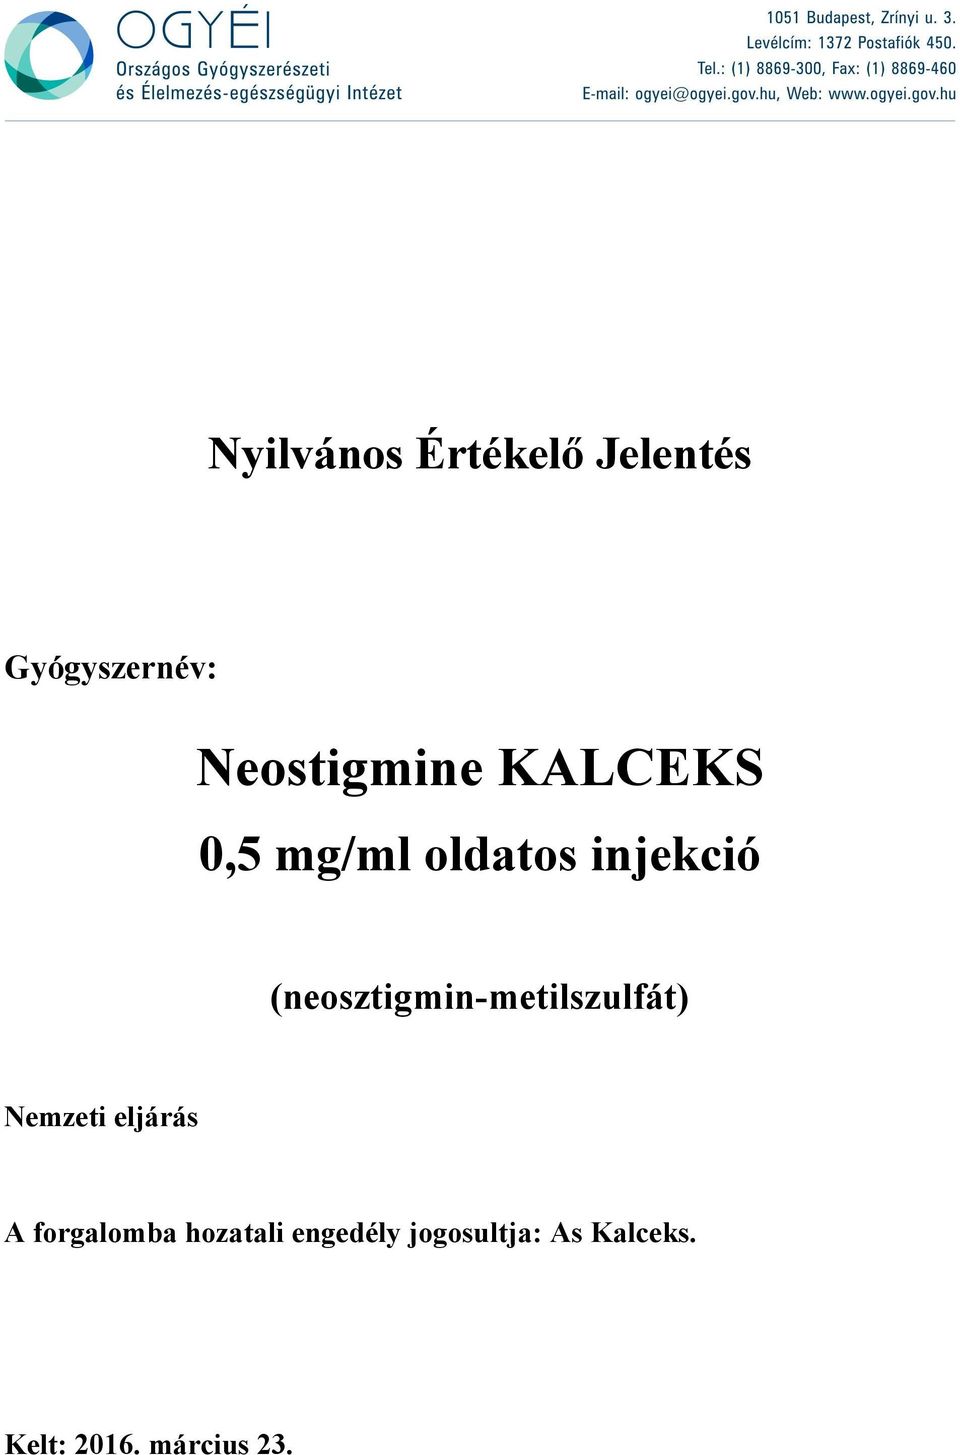 Neostigmine KALCEKS. 0,5 mg/ml oldatos injekció. Nyilvános Értékelő  Jelentés. (neosztigmin-metilszulfát) Gyógyszernév: Nemzeti eljárás - PDF  Ingyenes letöltés